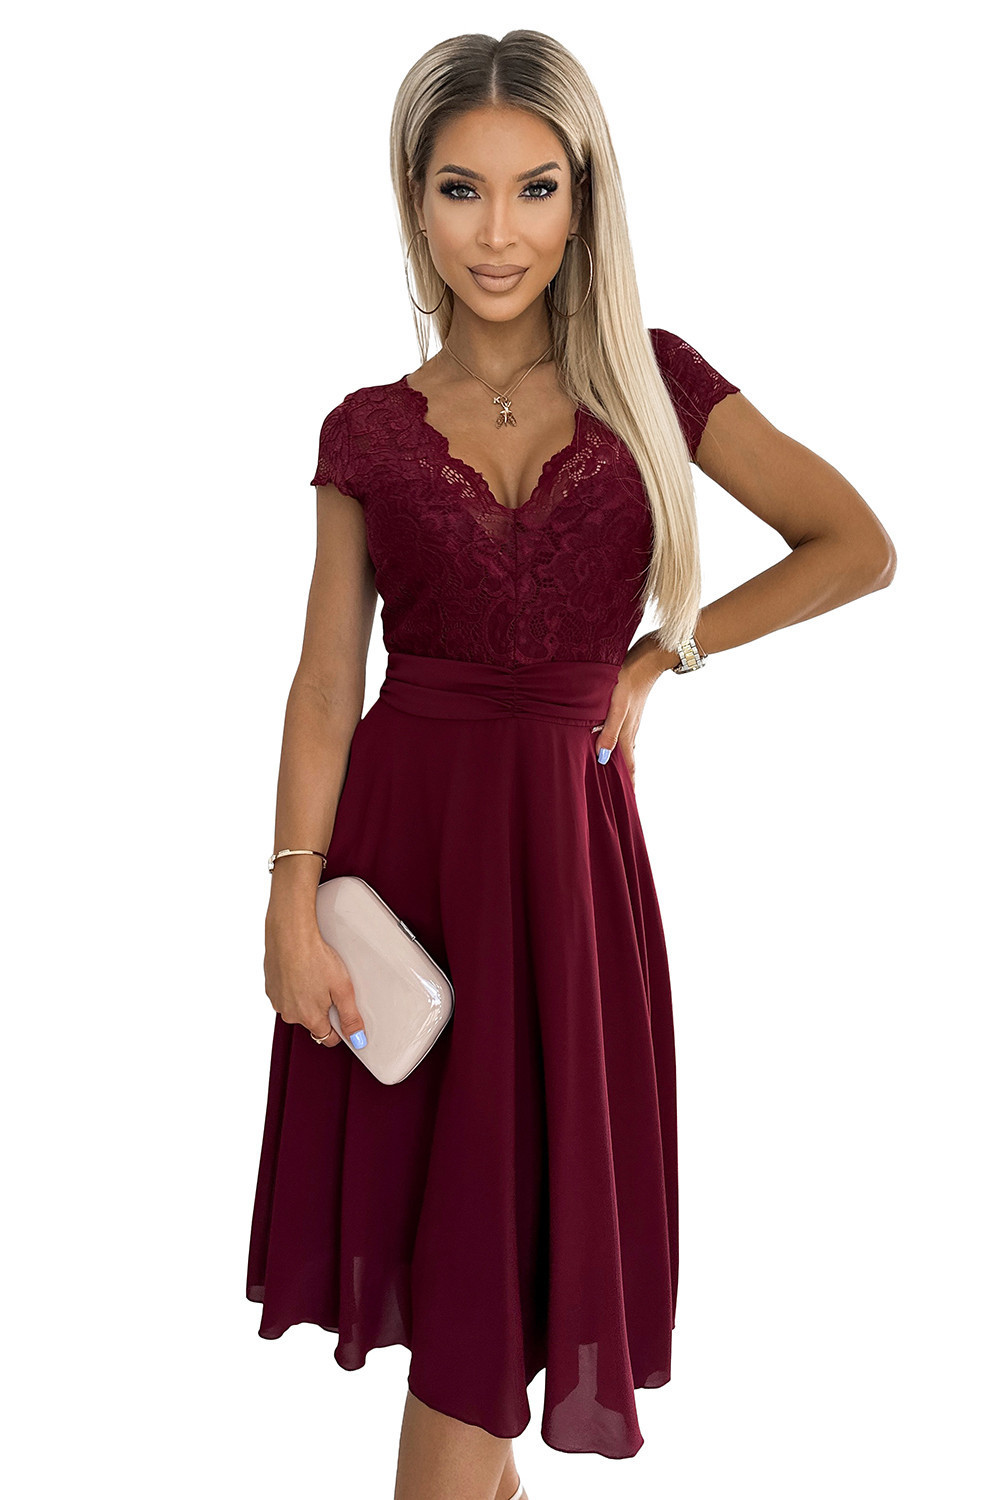 LINDA - Dámské šifonové šaty ve vínové bordó barvě s krajkovým výstřihem 381-5 L